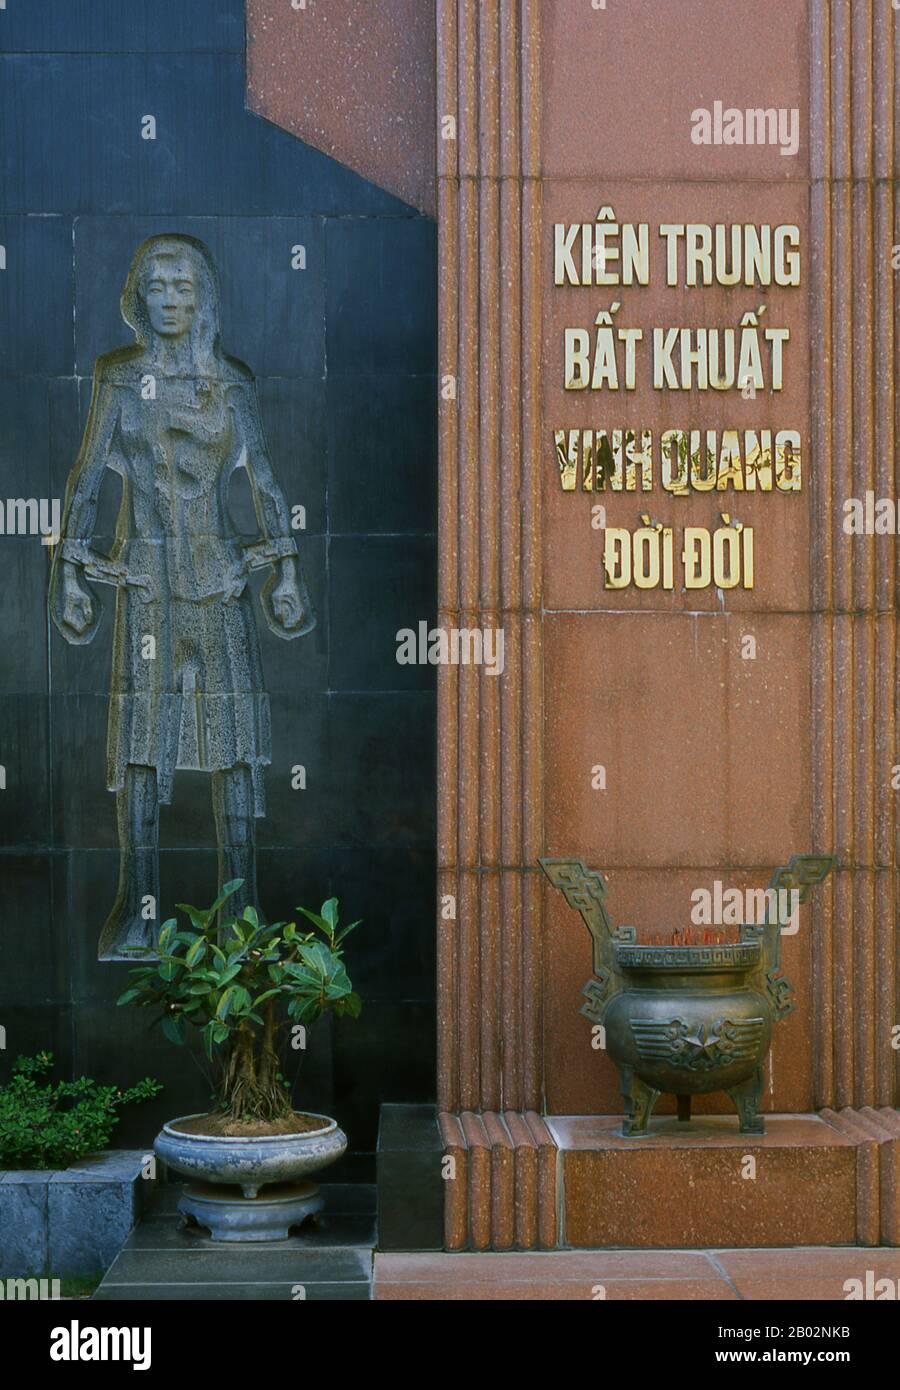 Vietnam: Denkmal im Hoa Lo Gefängnismuseum, Hanoi. Die französische Kolonialverwaltung baute 1896 das Hoa Lo Gefängnis. Ursprünglich sollten 450 Gefangene festgehalten werden, und in den 1930er Jahren war die Zahl der Inhaftierten auf fast 2.000 angestiegen, die politische Gefangene mit großer Mehrheit. Das Hoa Lo Gefängnis wurde während des Zweiten Indochina-Krieges als Ort der Inhaftierung für niedergeschlagene US-Piloten bekannt, die das Gefängnis ironischerweise „Hanoi Hilton“ nannten. Stockfoto